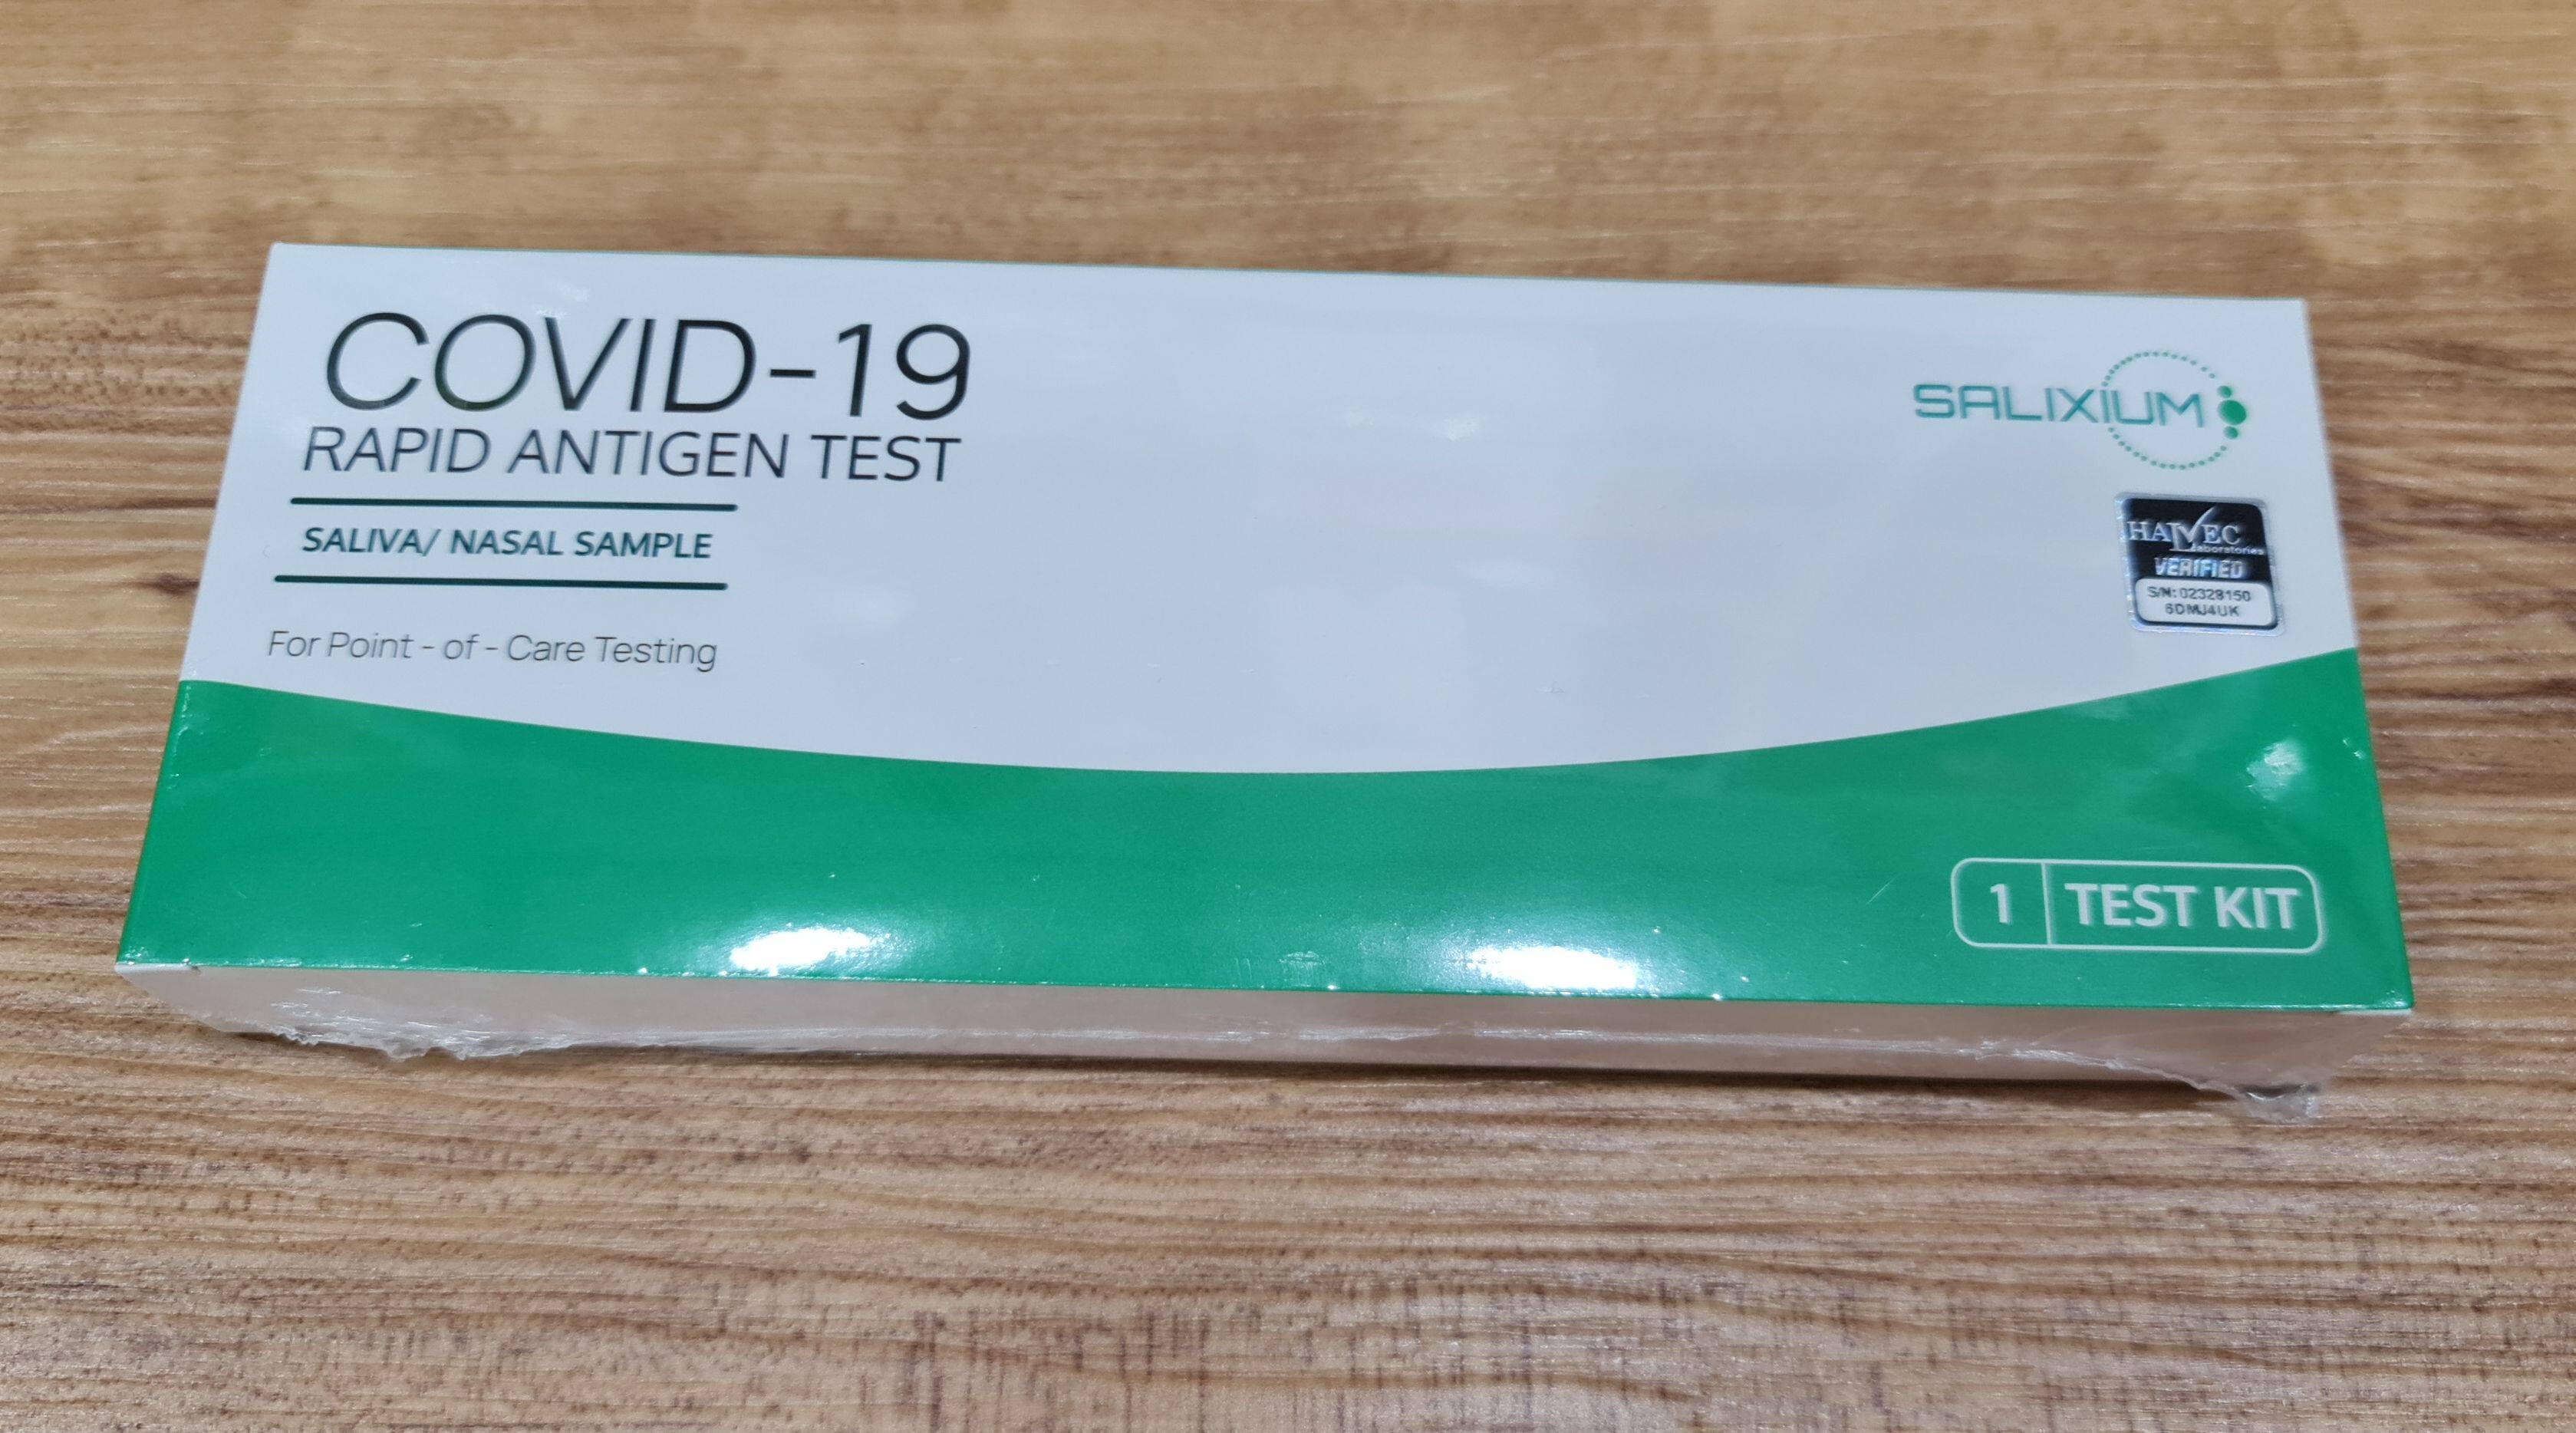 Salixium covid 19 test kit